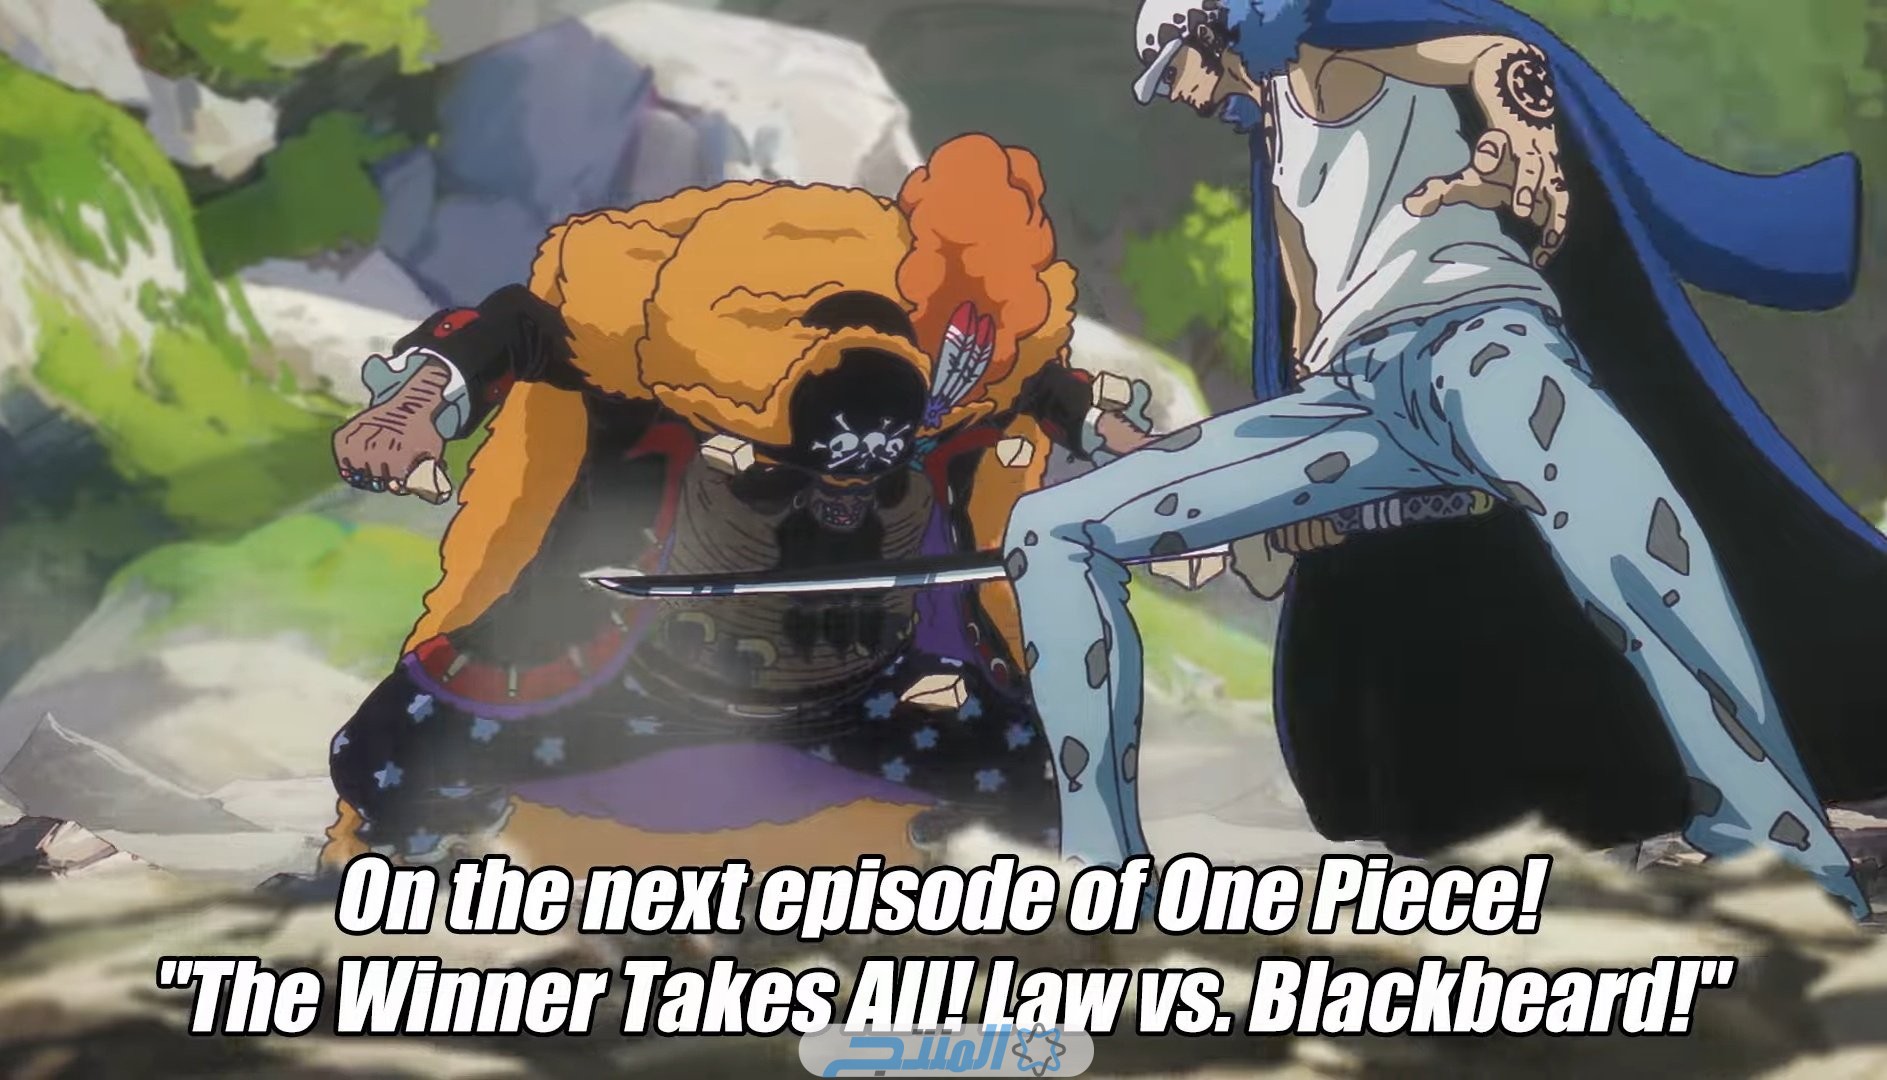 مشاهدة انمي One Piece الحلقة 1093 مترجم